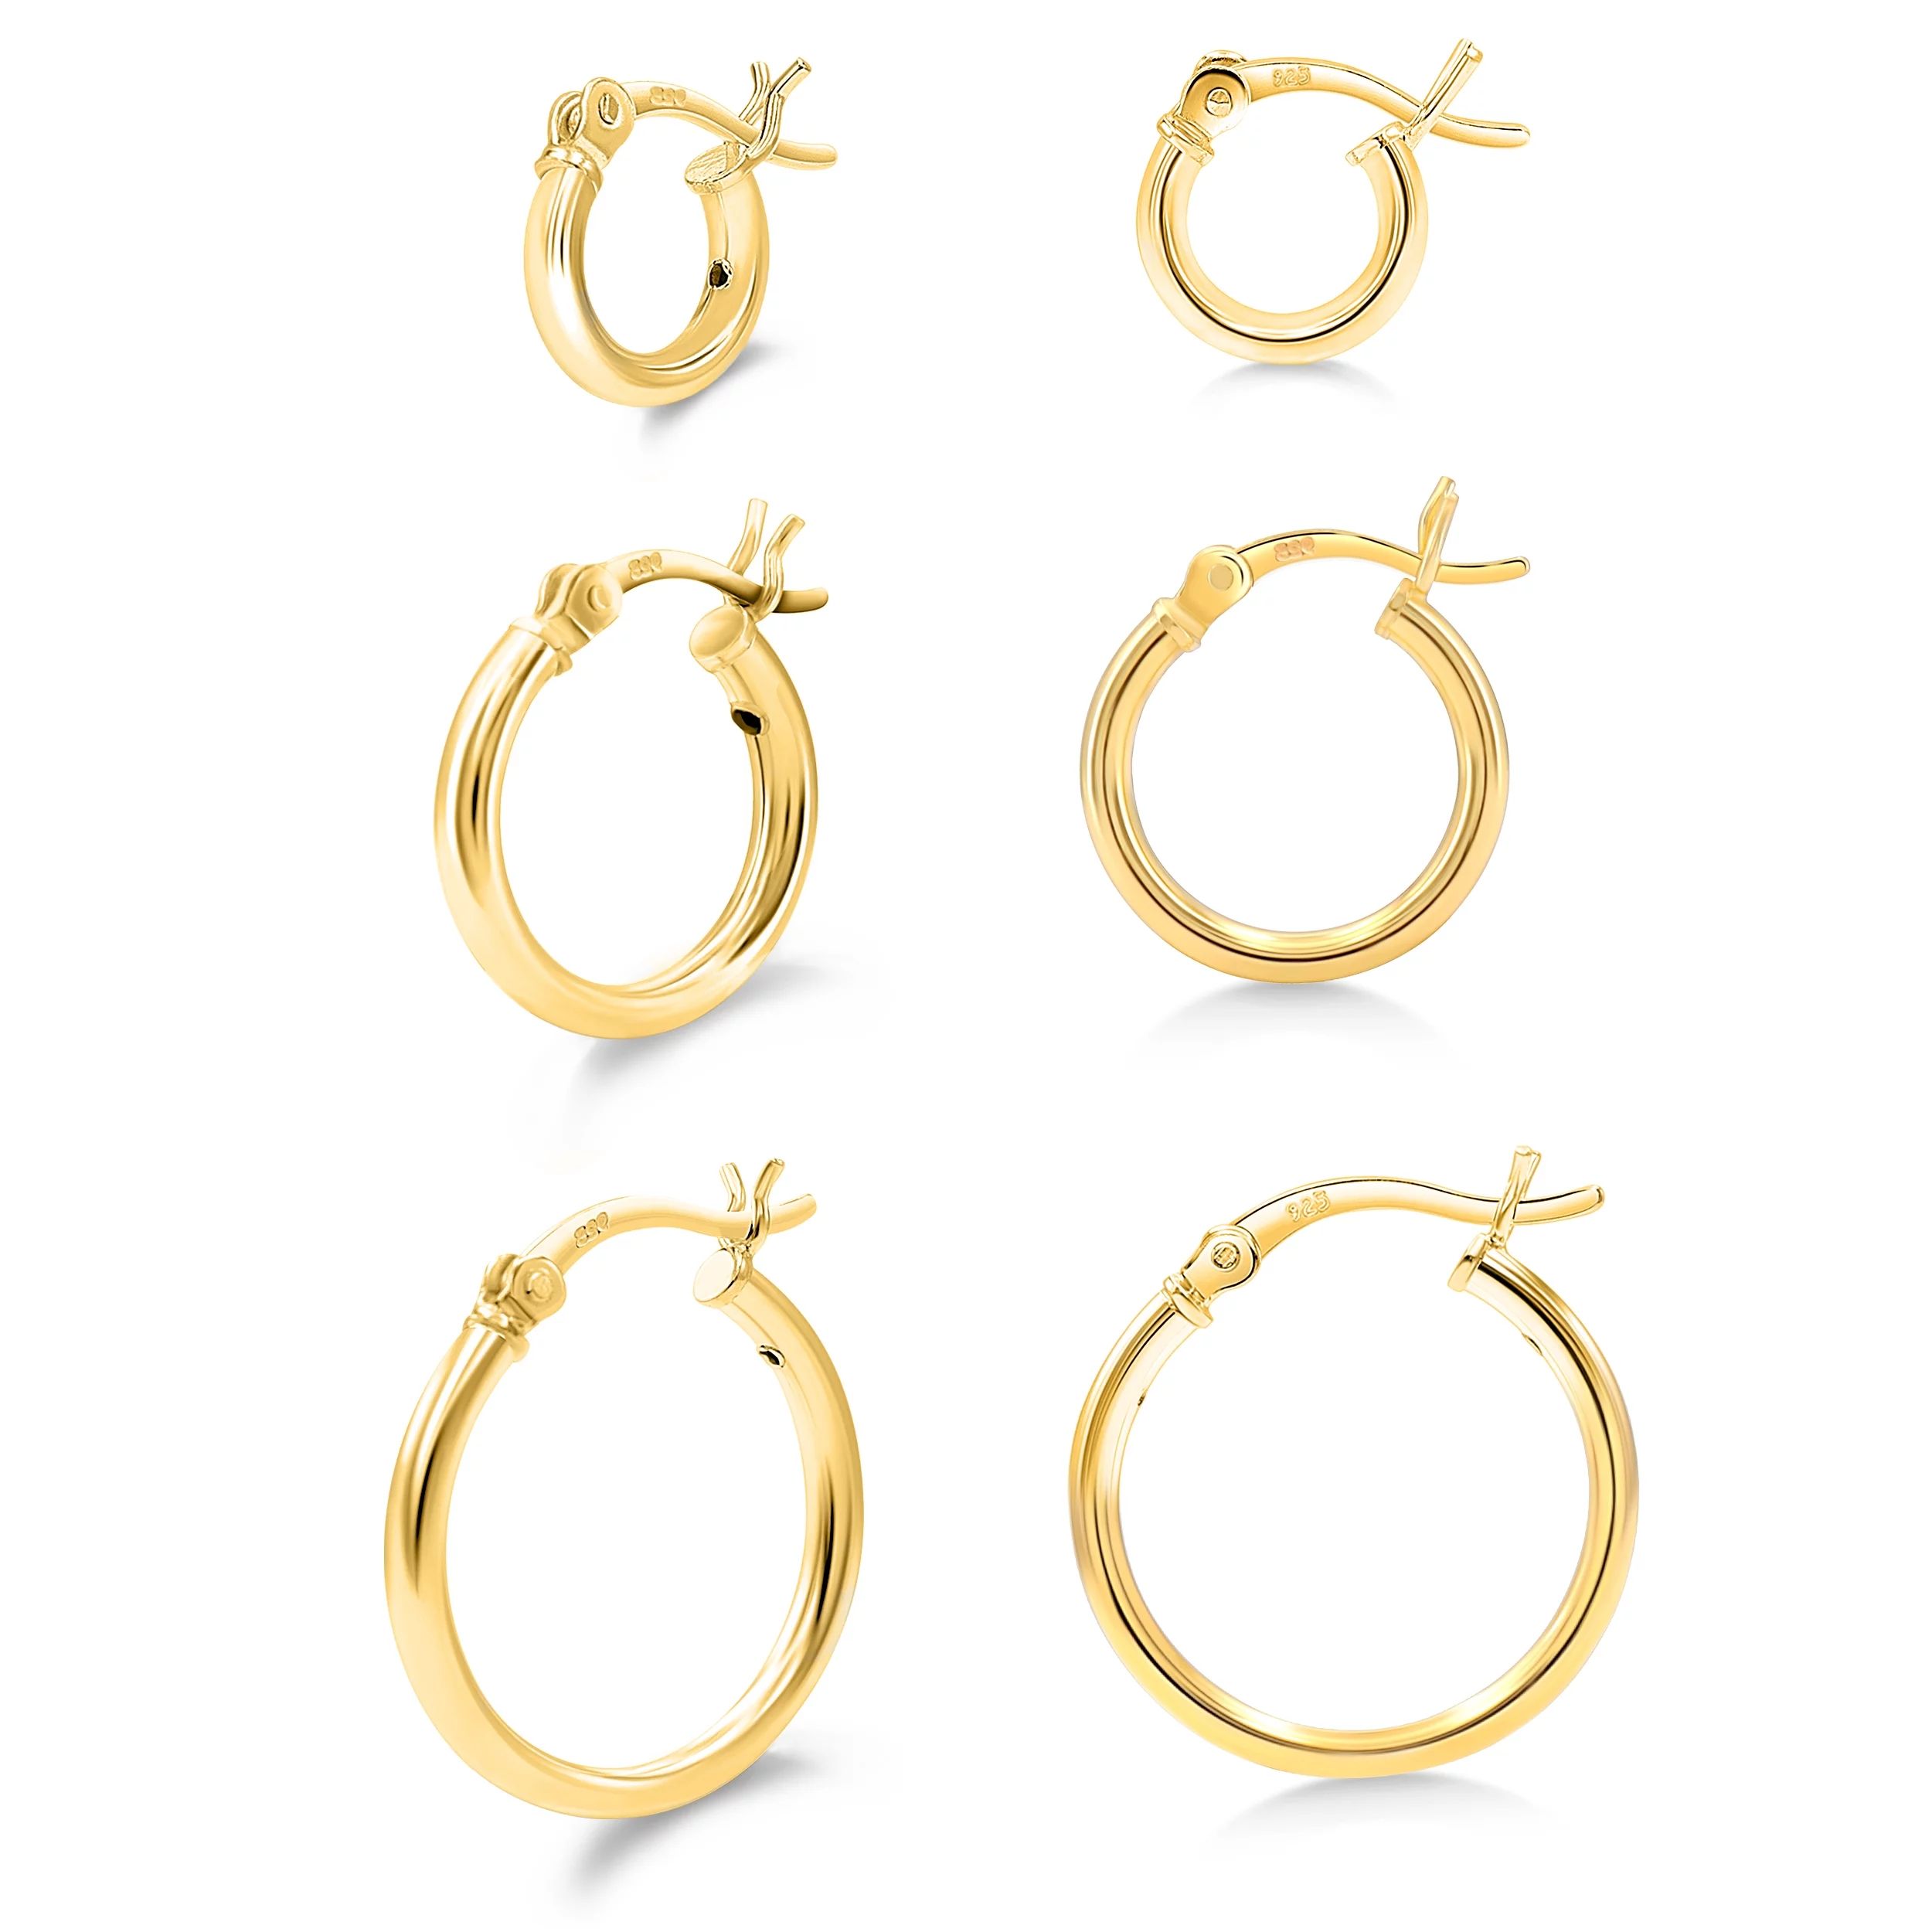 KEZEF Hoop Earring Set of 3 14k Gold Plated Sterling Silver 2mm Hoop Earrings for Women Girls 10 ... | Walmart (US)